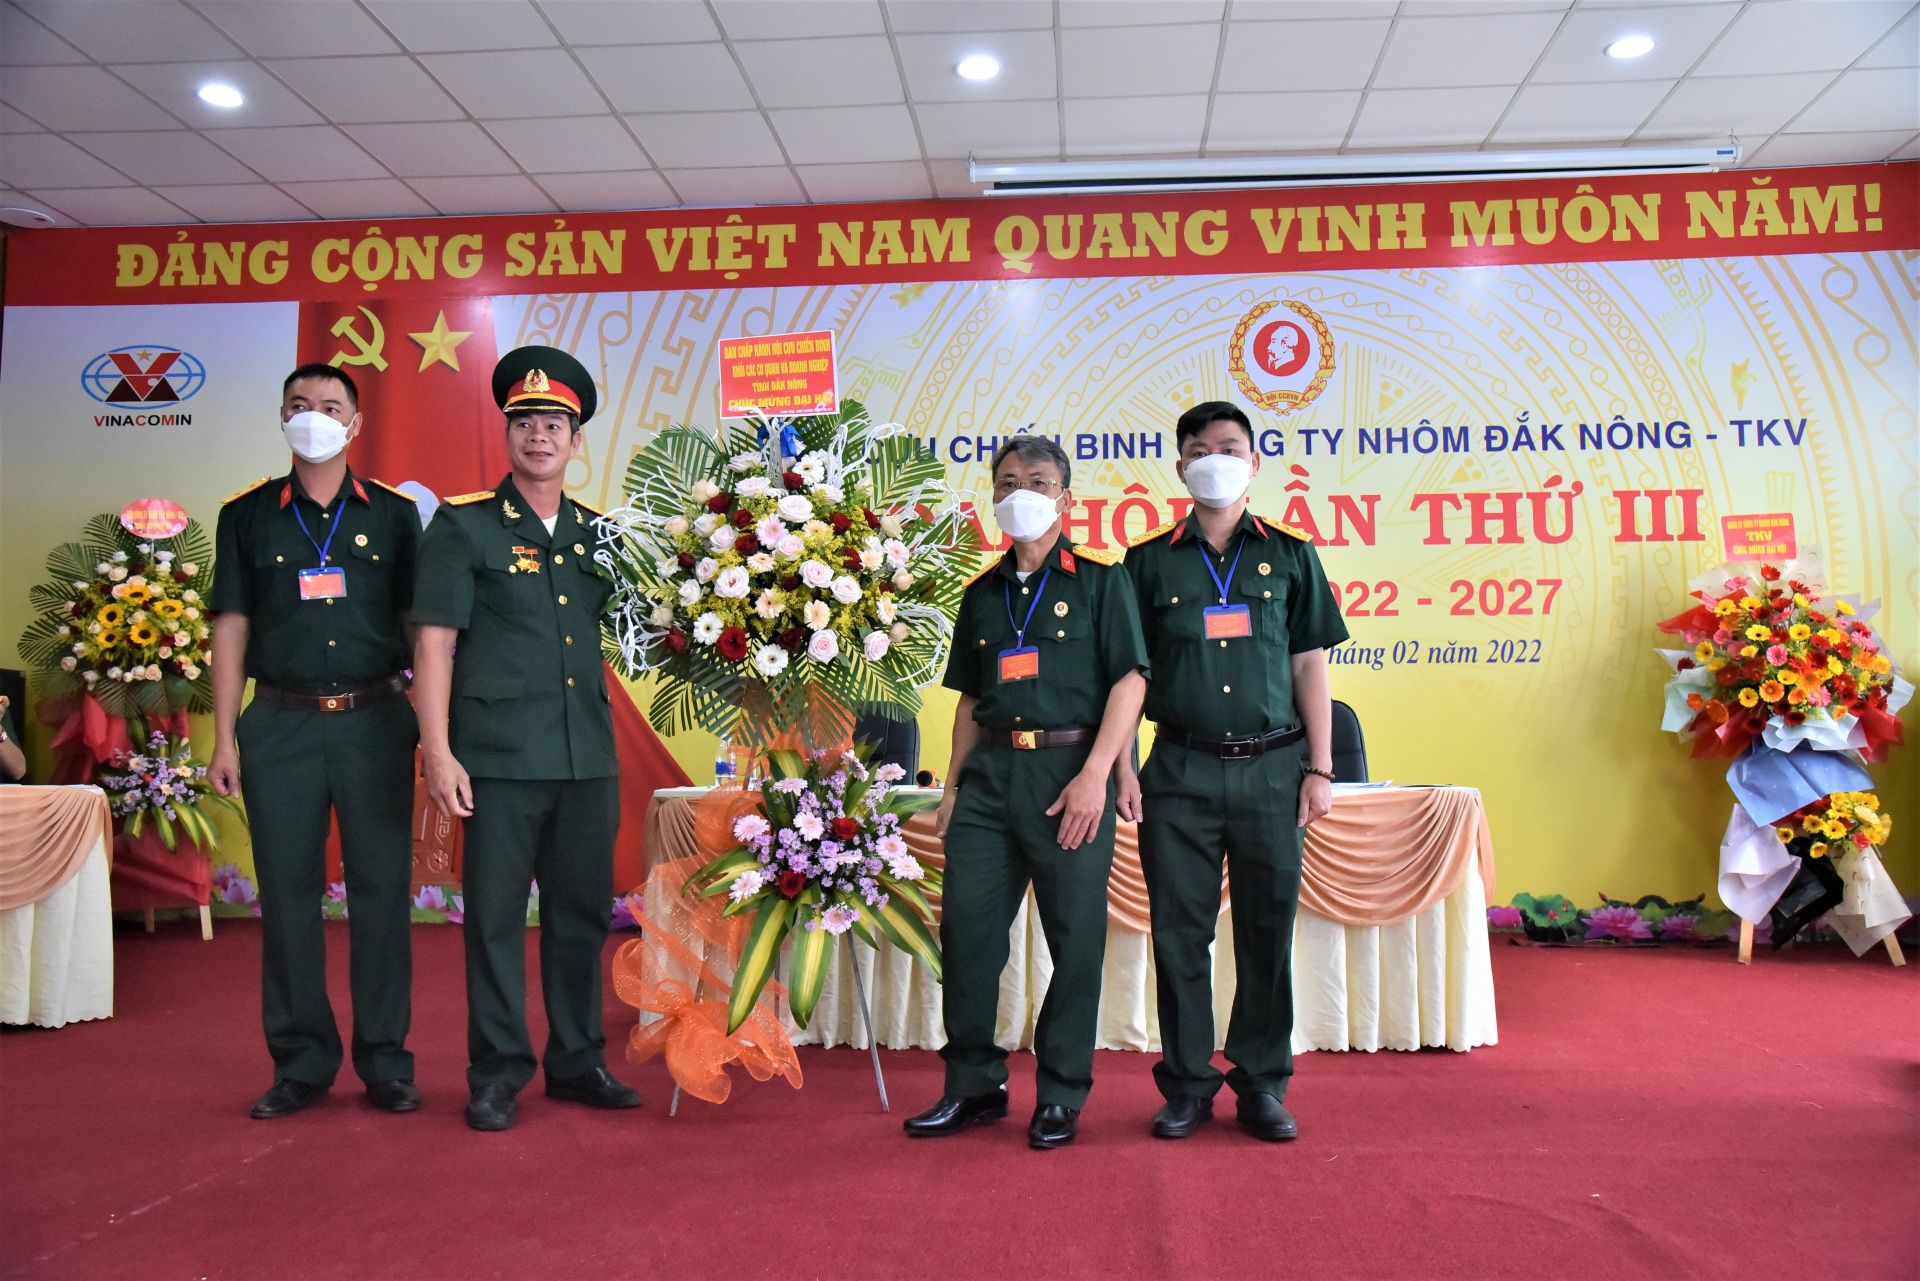  Đồng chí Bùi Hồng Mến thay mặt HCCB Đảng ủy Khối các Cơ quan và Doanh nghiệp tỉnh Đắk Nông tặng hoa chúc mừng Đại hội